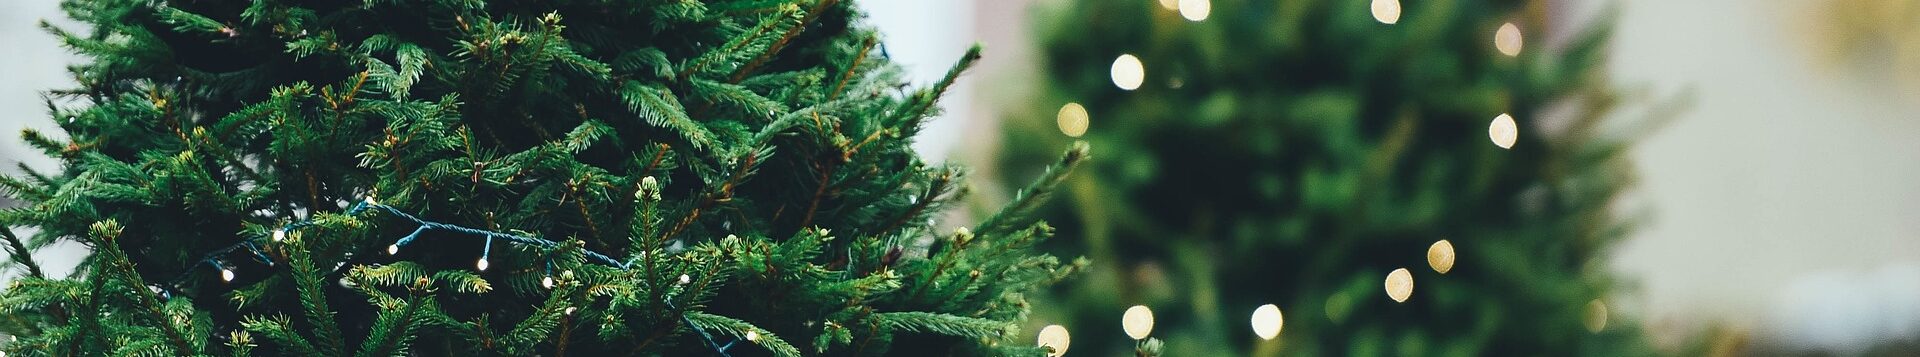 Zwei Weihnachtsbäume sind geschmückt mit Lichterketten, eine davon leuchtet.